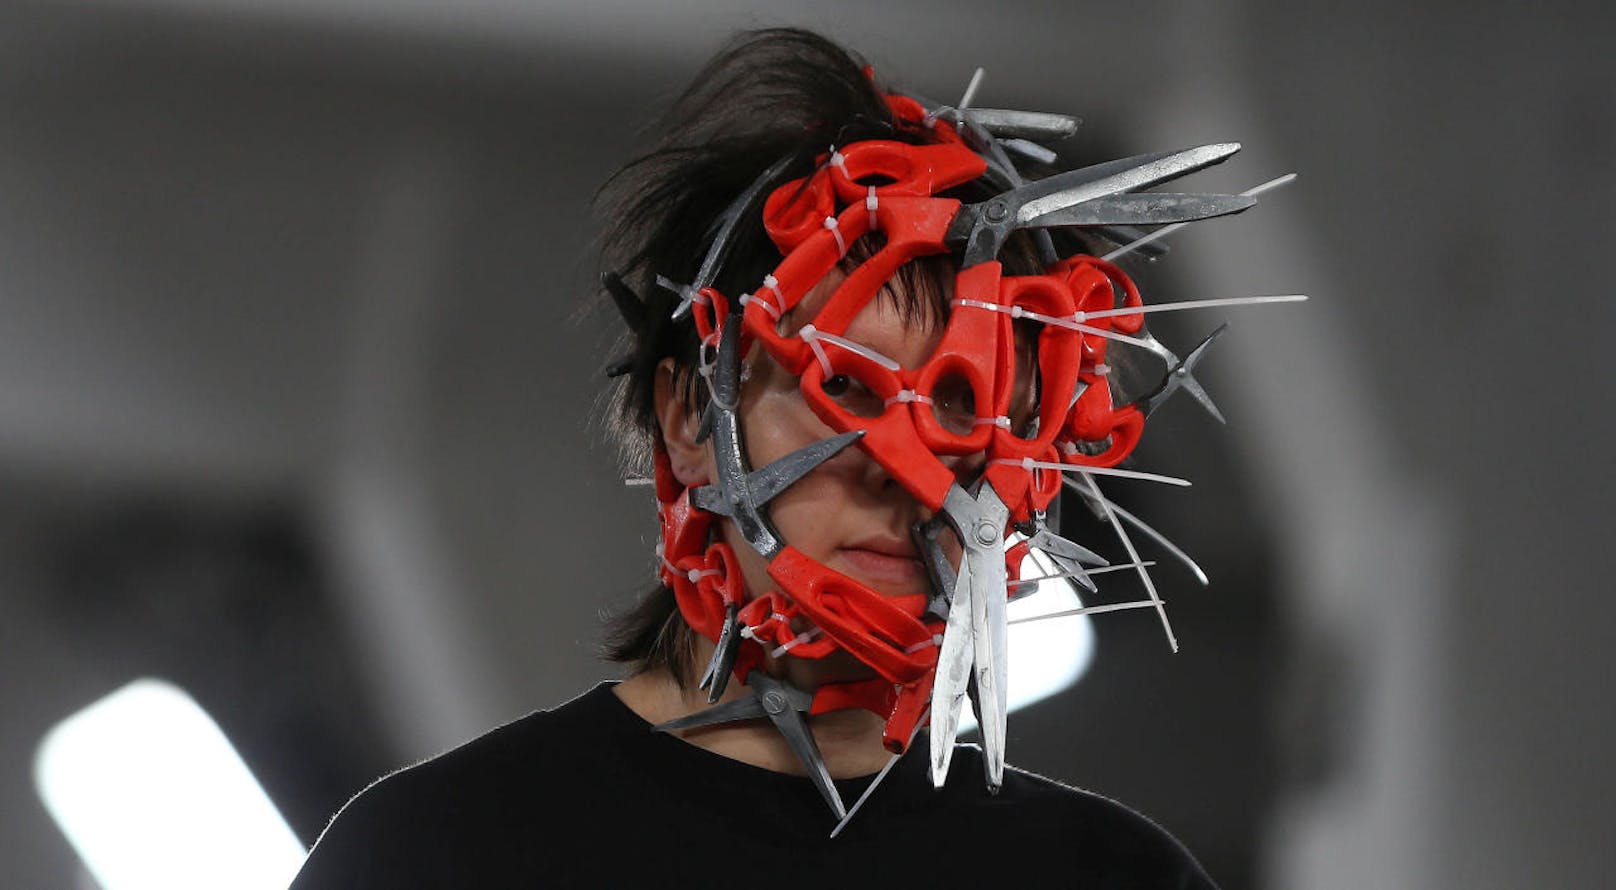 "Edward mit dem Scherengesicht" könnte dieses Model heißen bei der London Fashion Week 2017.